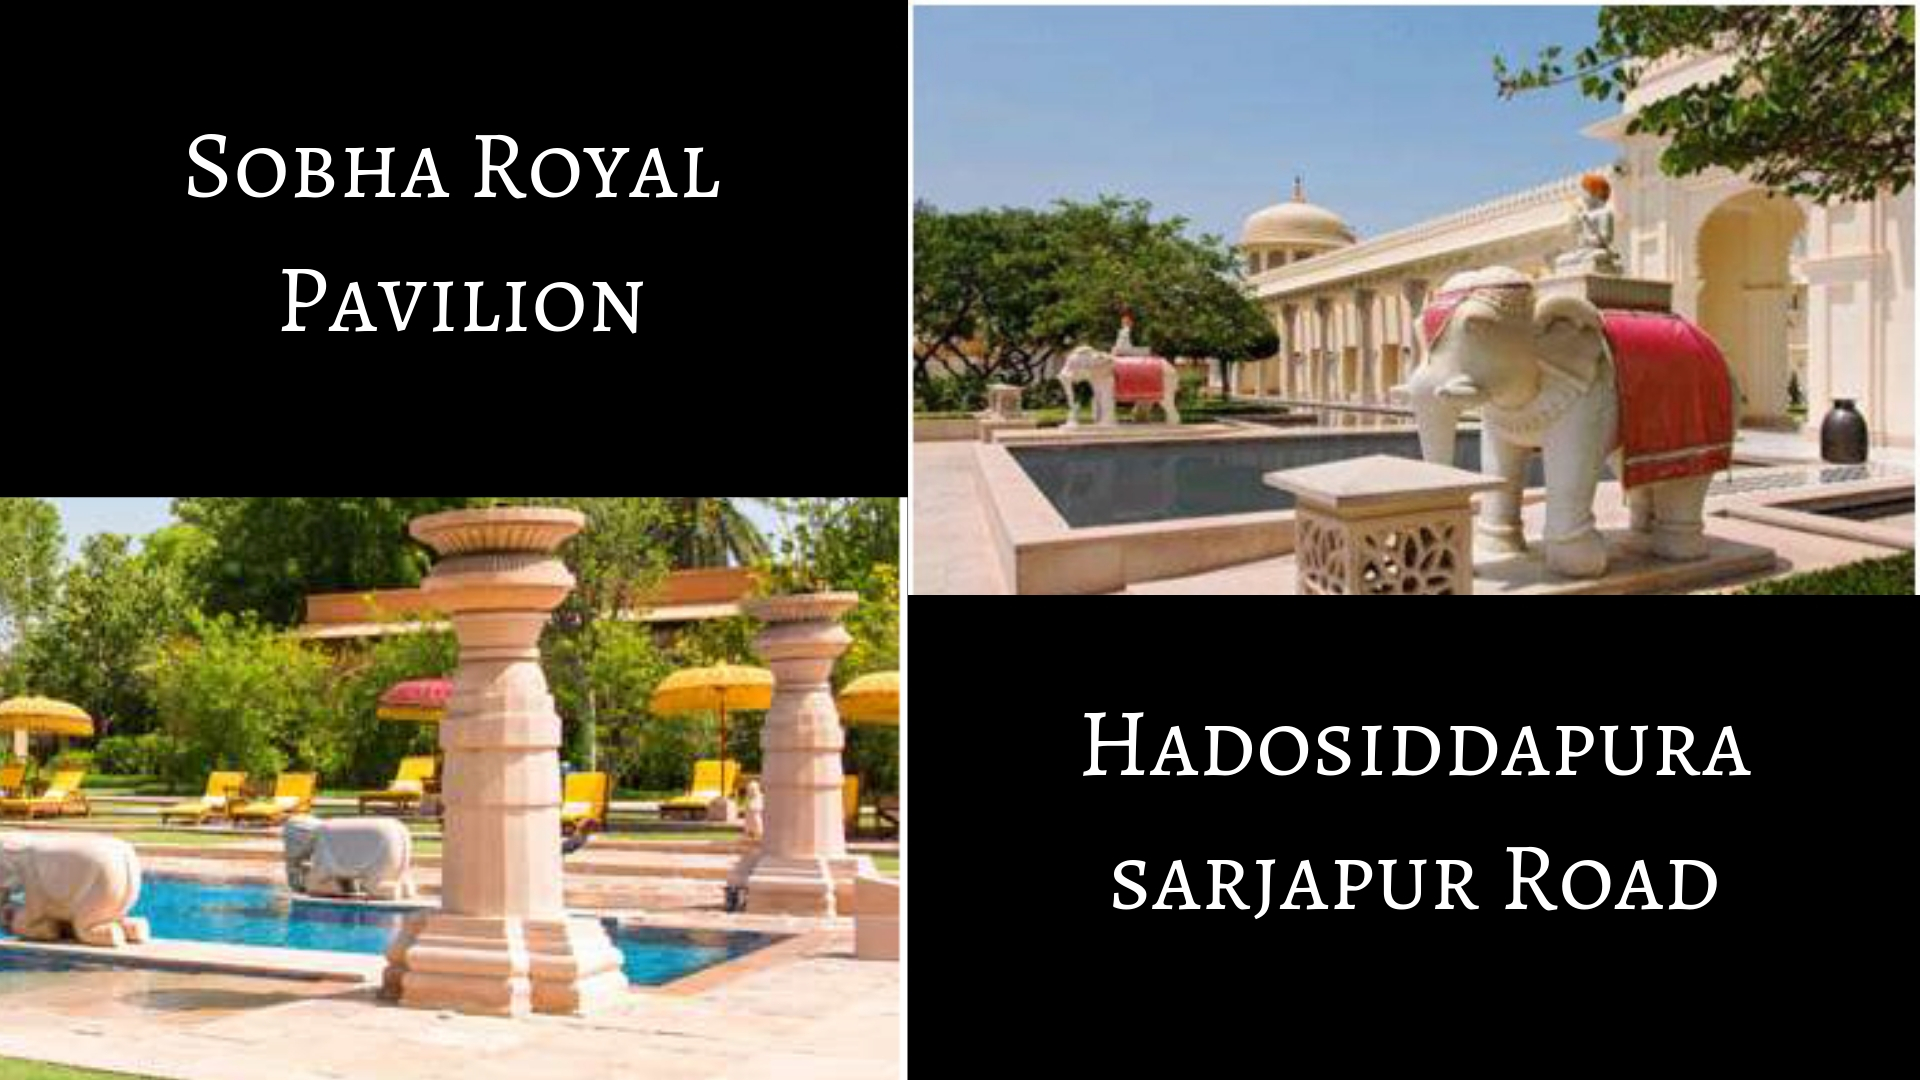 Sobha Royal Pavilion, Sobha Royal Pavilion Hadosiddhapura, Sobha Royal Pavilion Bangalore